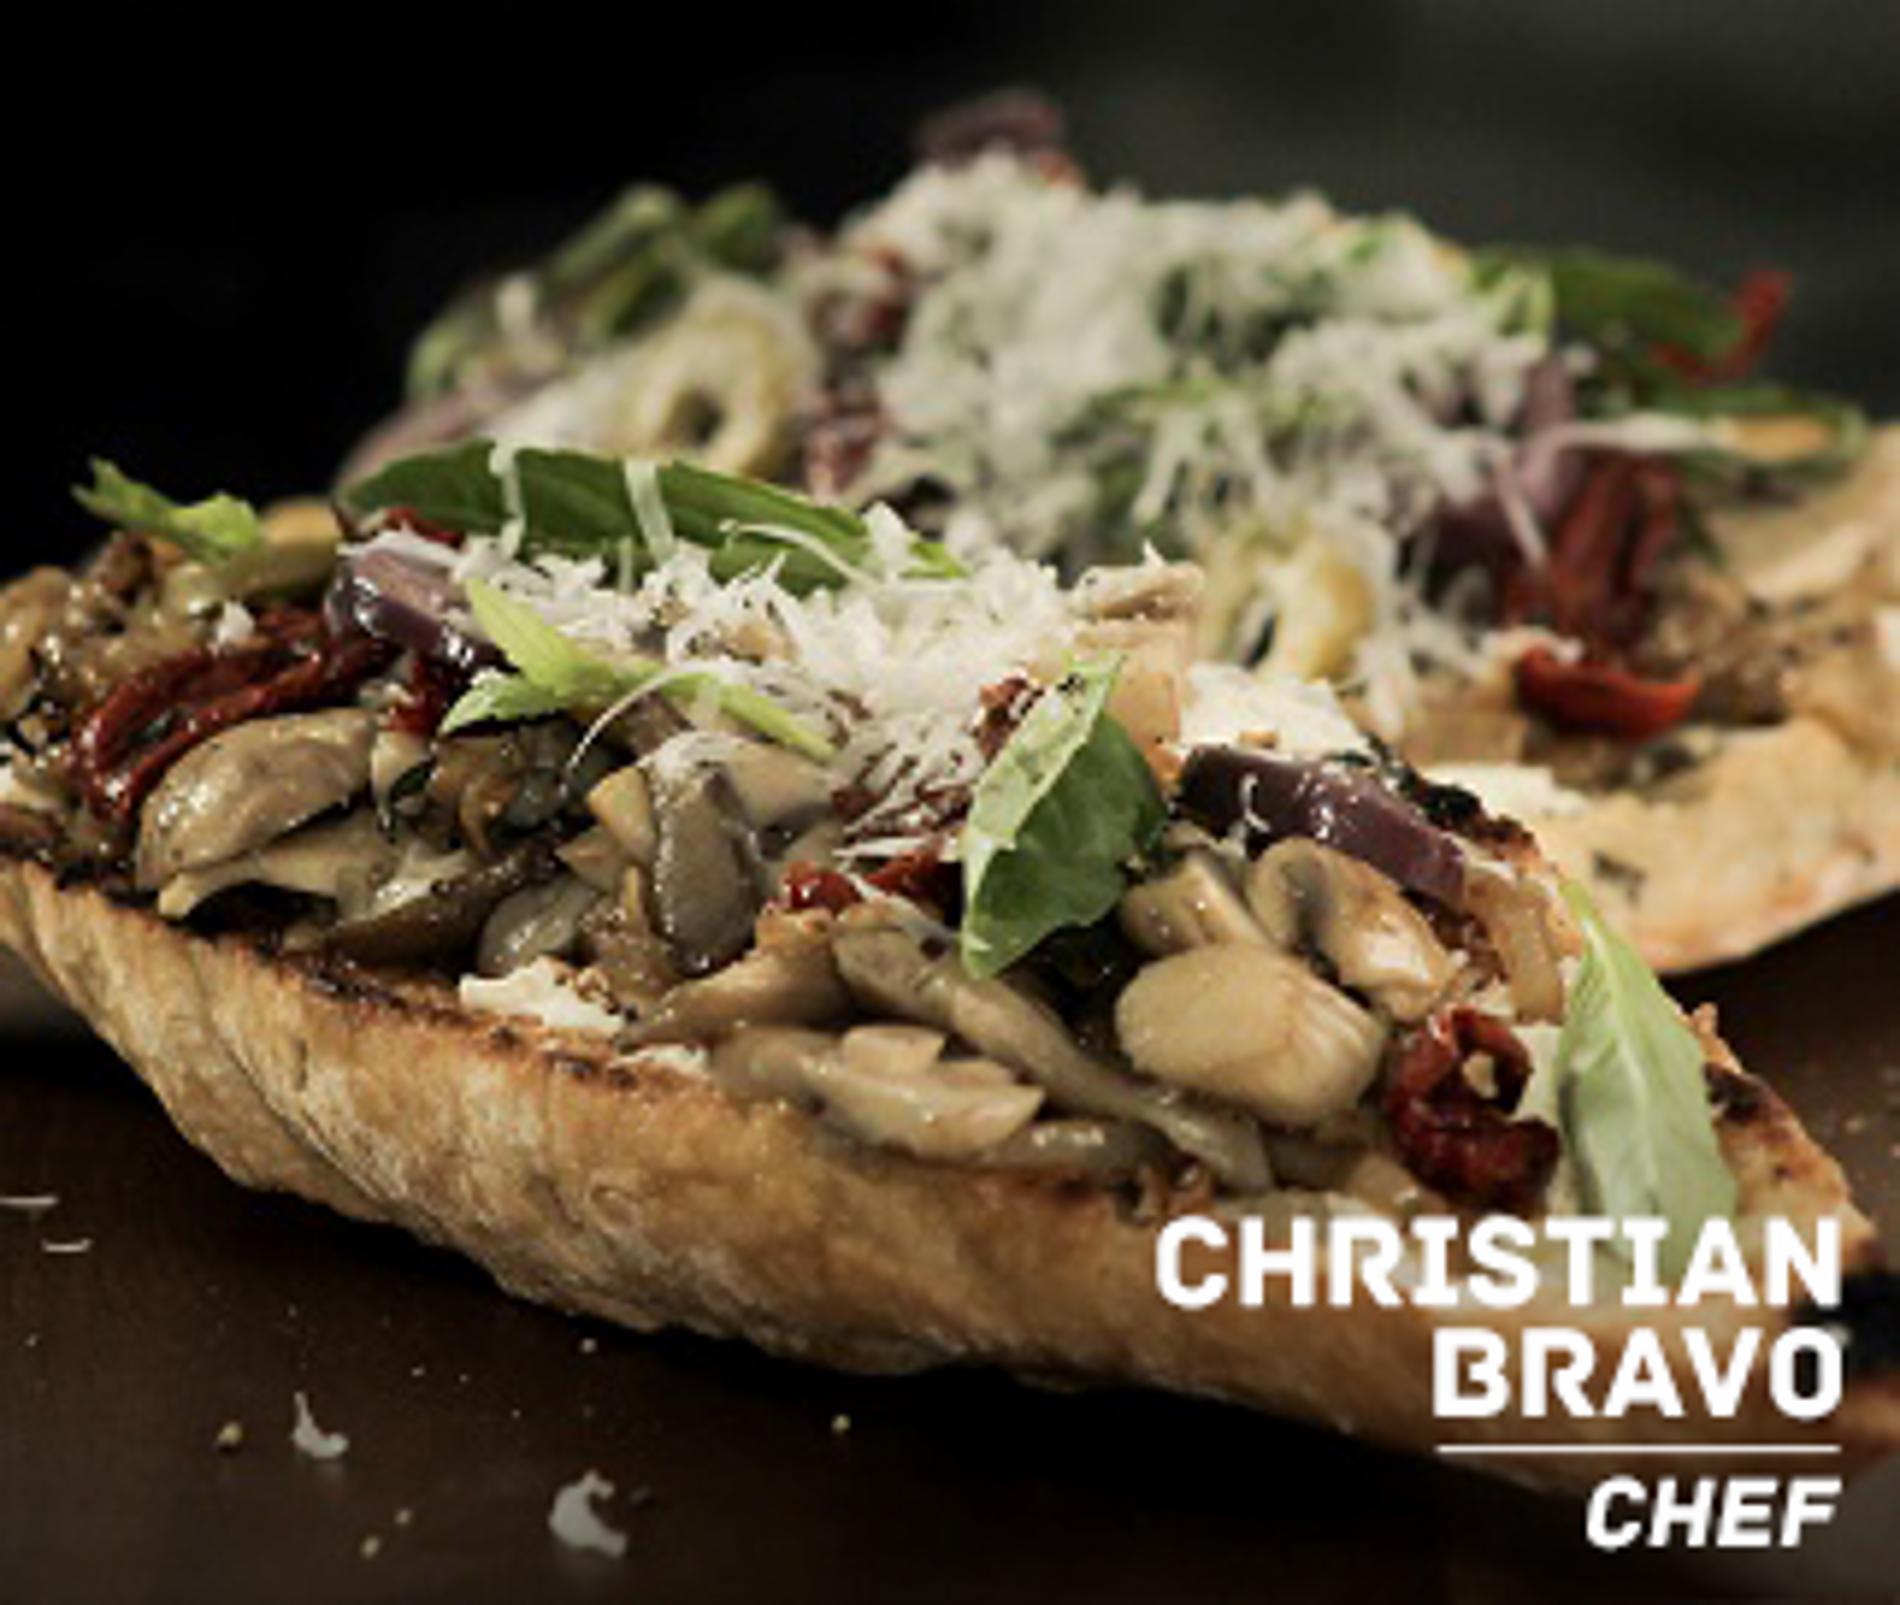 Pizzaladiere al estilo Christian Bravo